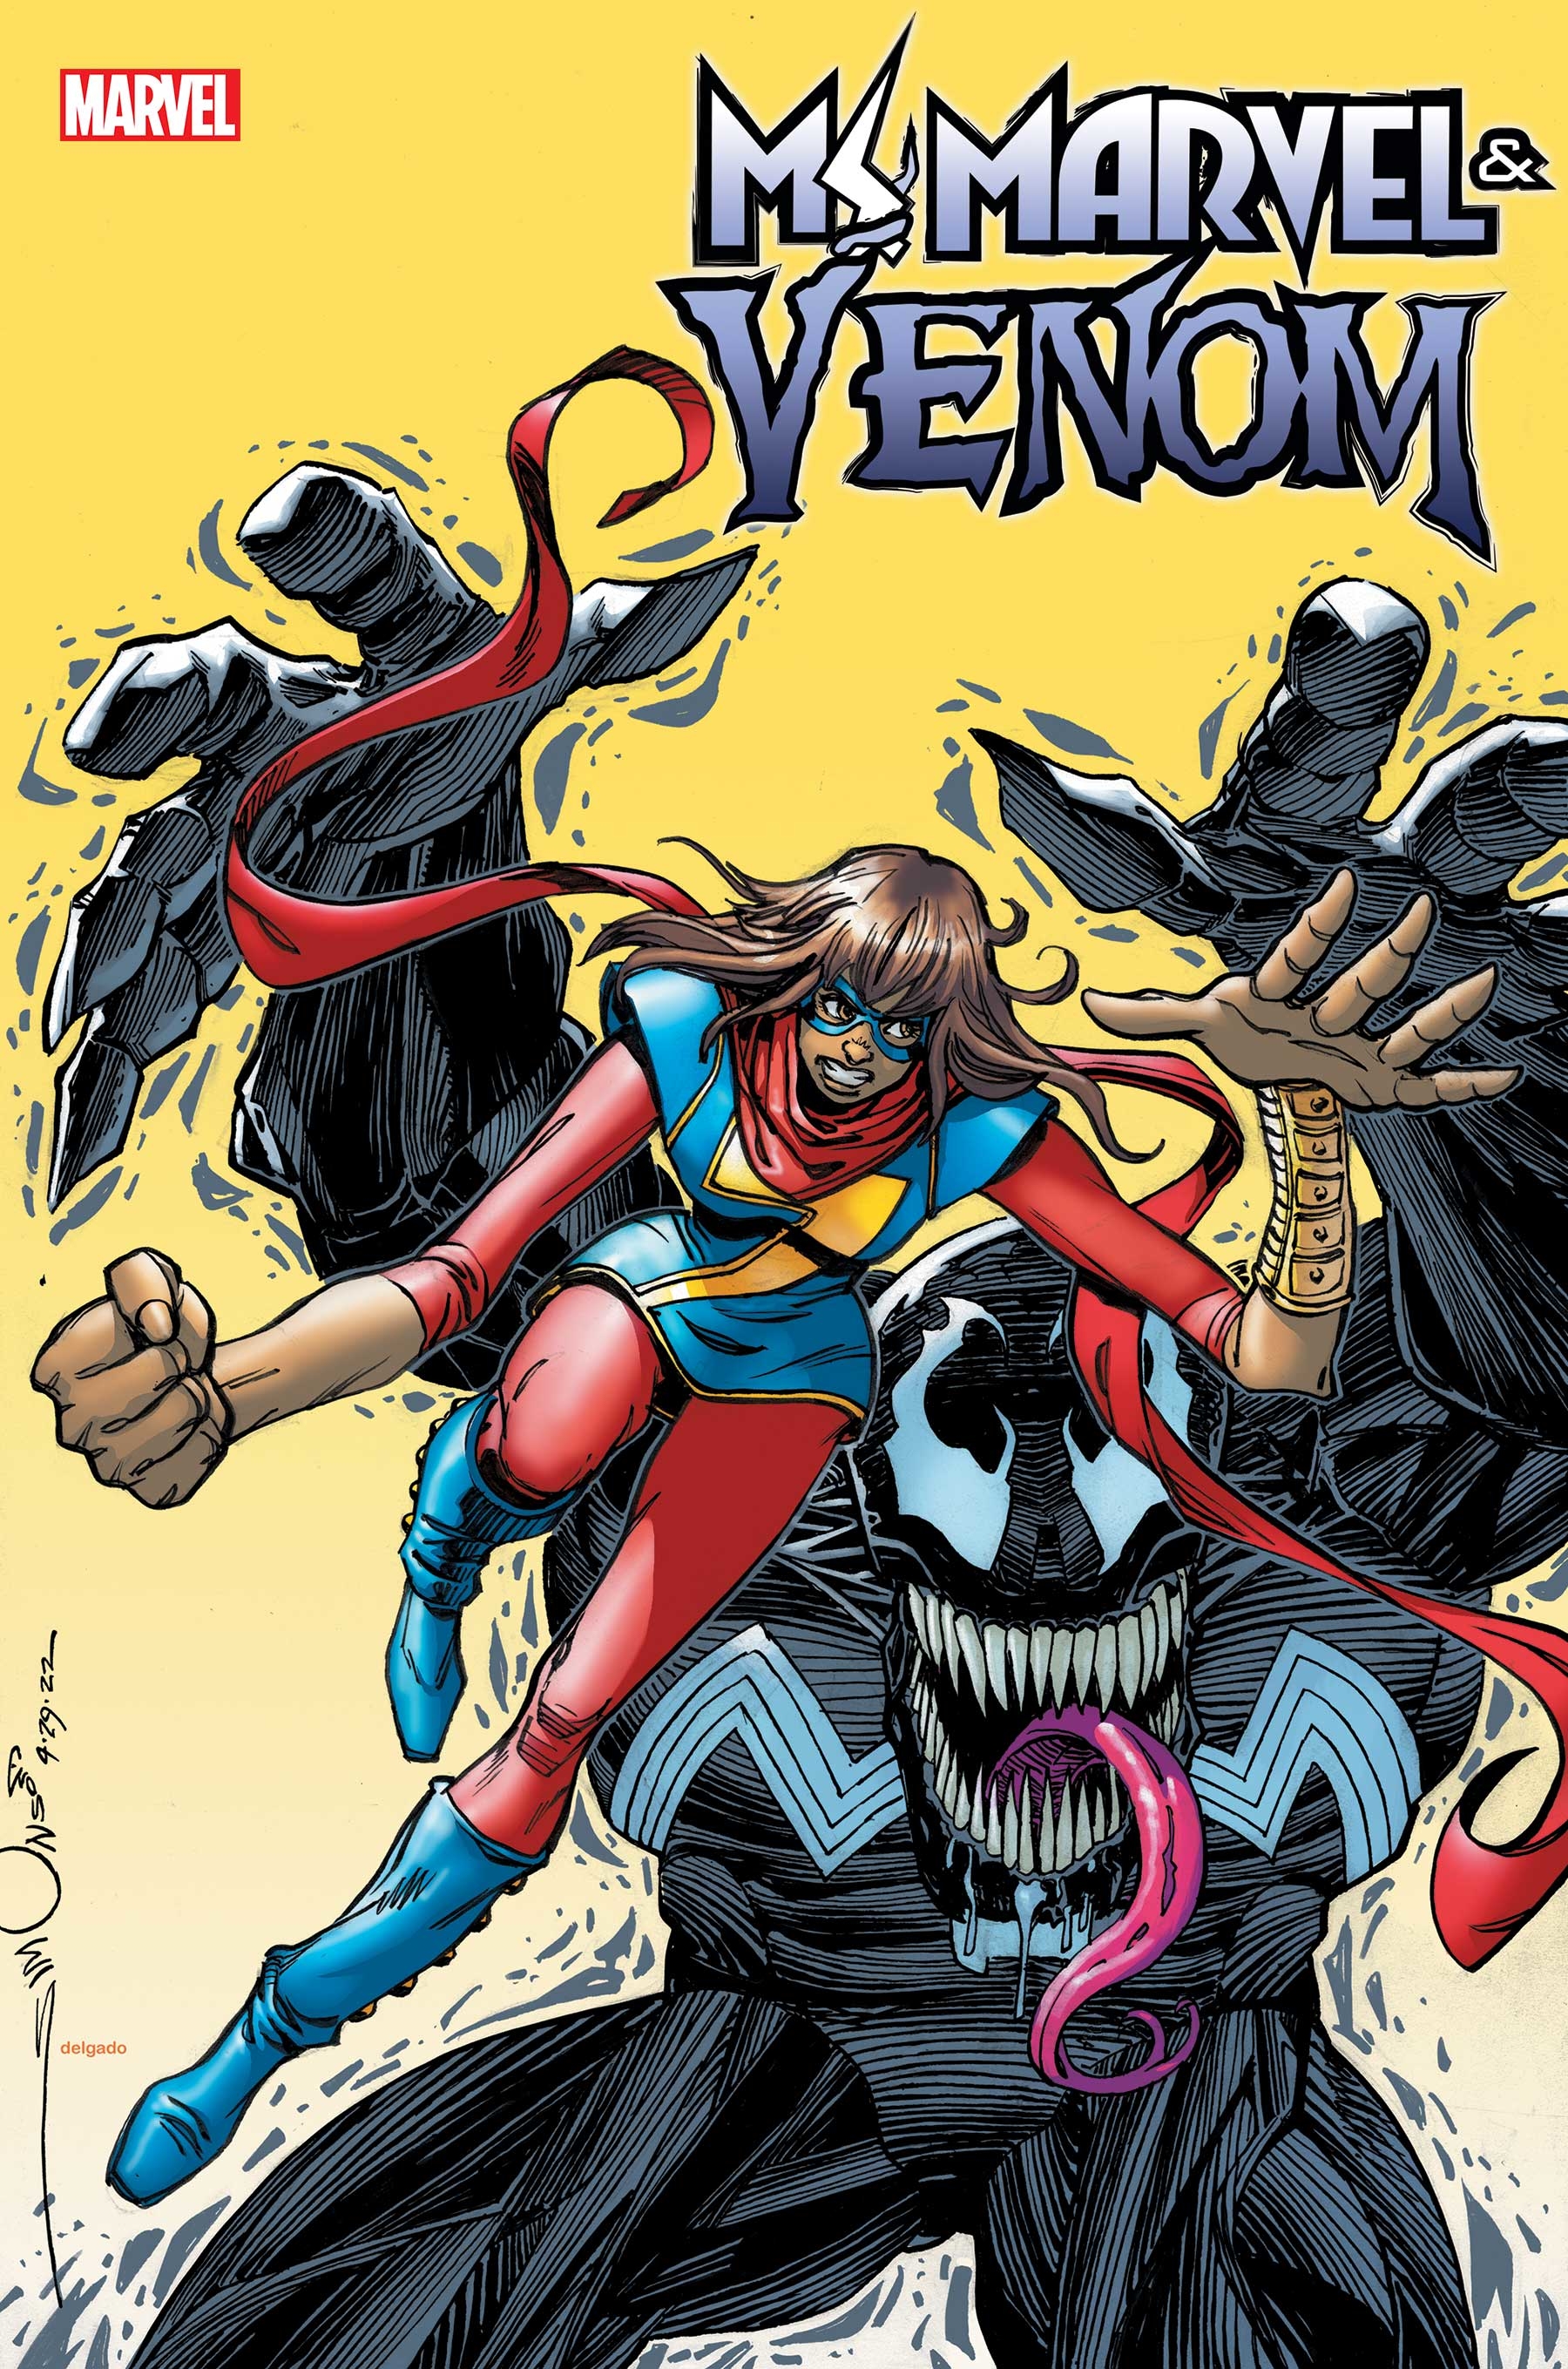 Ms. Marvel & Venom #1 Simonson Variant